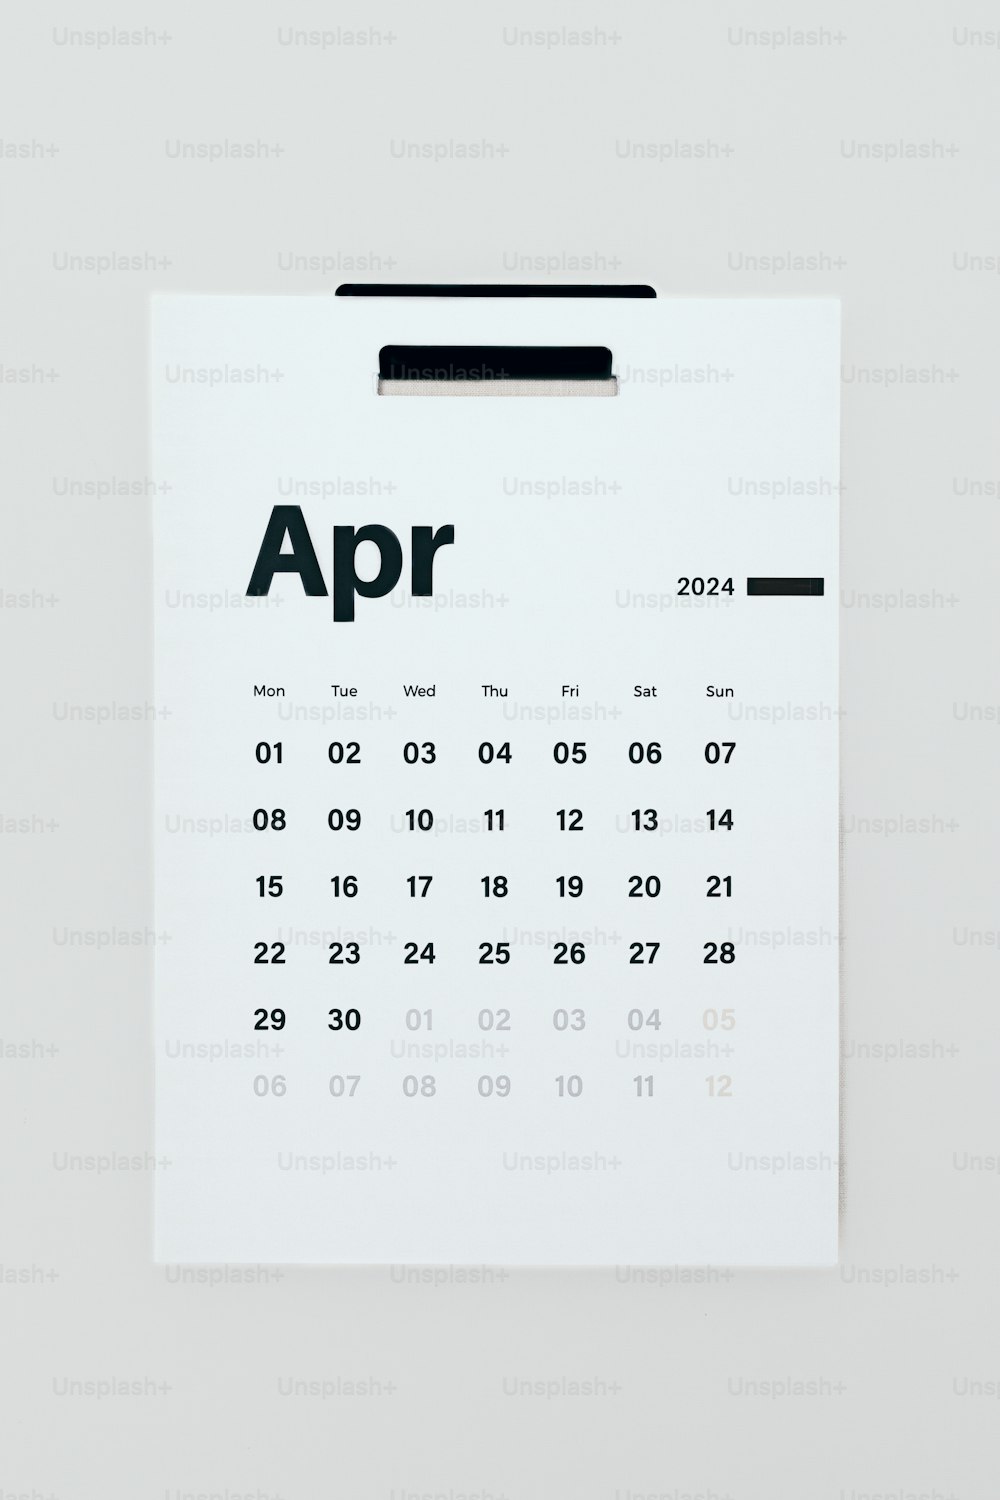 「APR」という単語が記載されたカレンダー